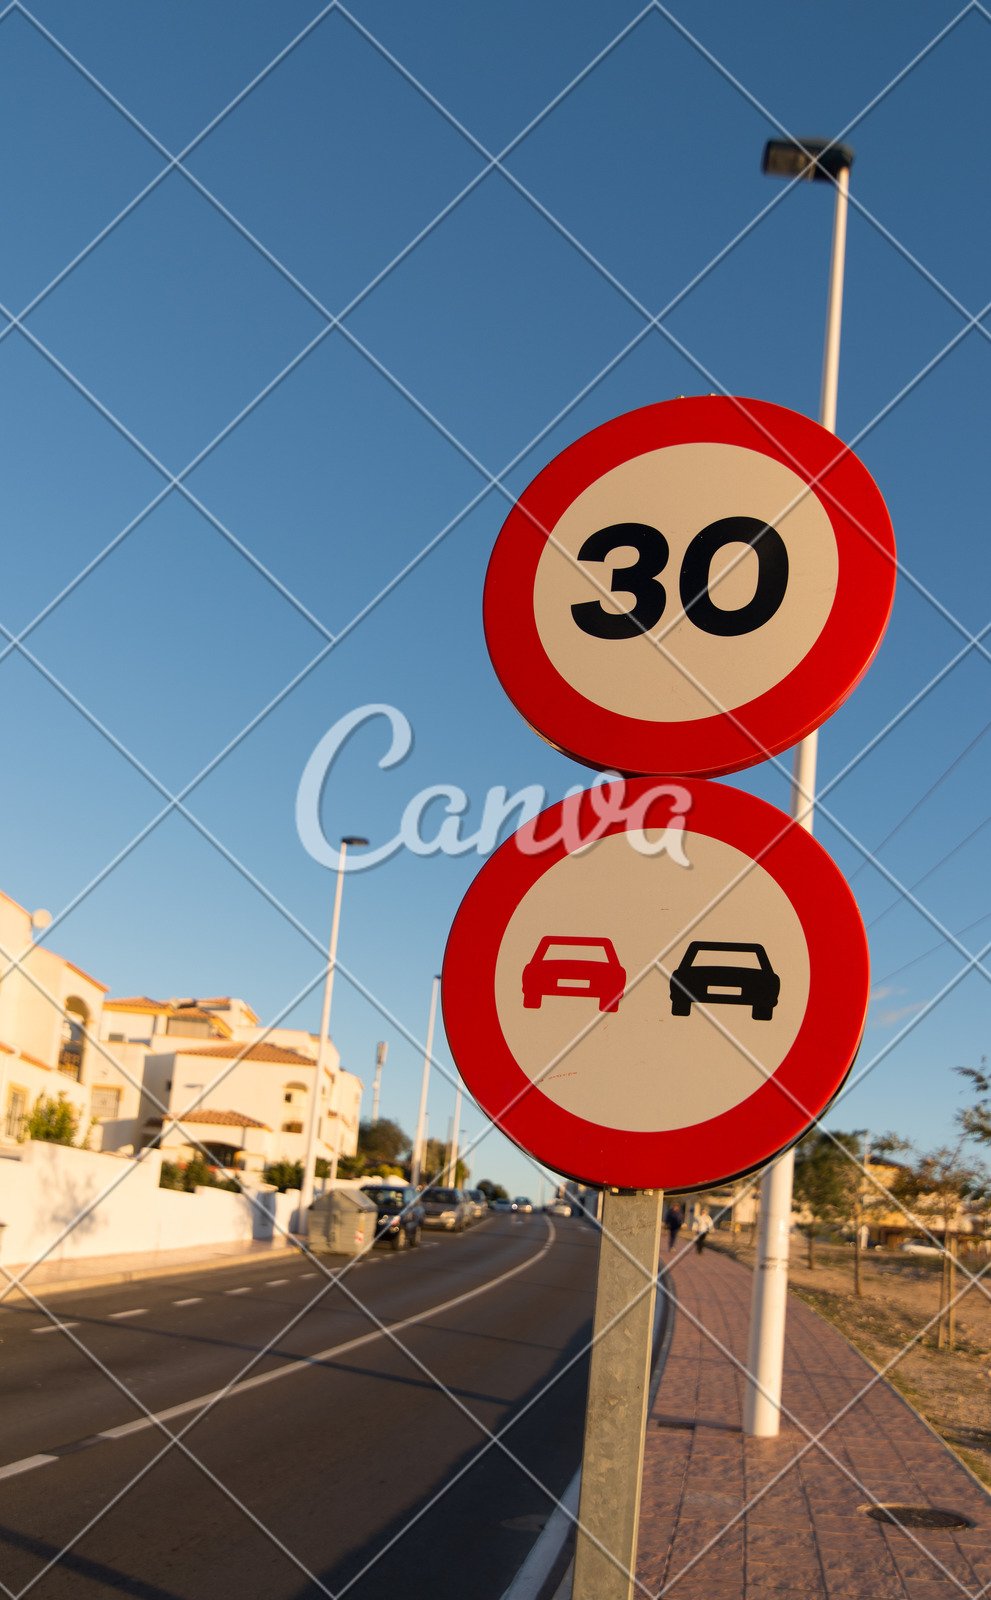 户外标志交通标志限速标志禁止的摄影街道安全的交通